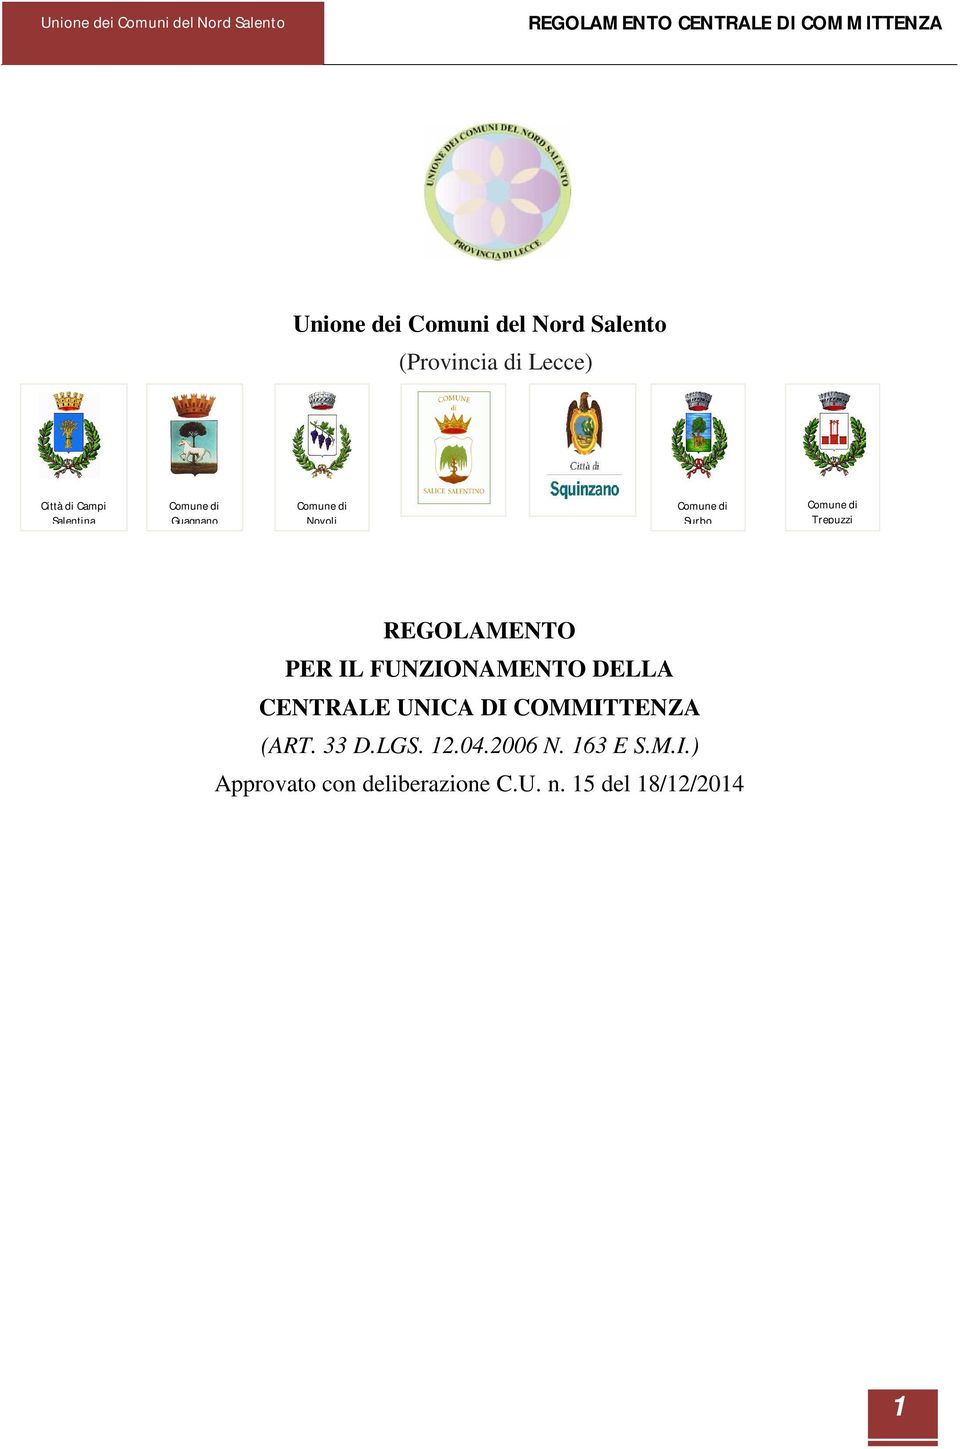 FUNZIONAMENTO DELLA CENTRALE UNICA DI COMMITTENZA (ART. 33 D.LGS. 12.04.